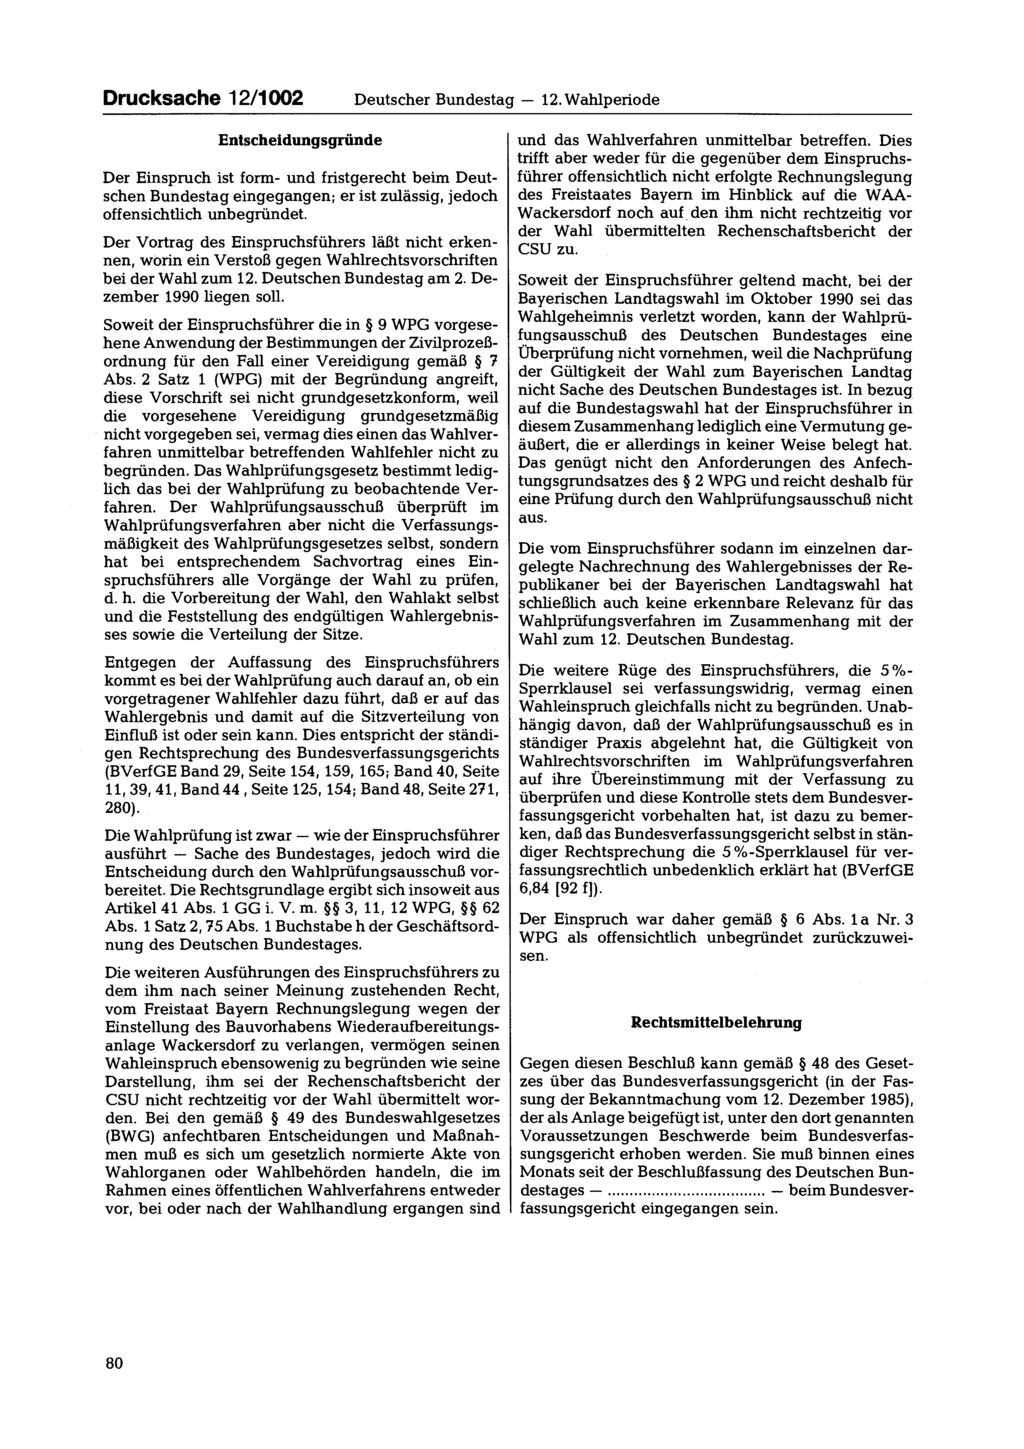 Drucksache 12/1002 Deutscher Bundestag 12.